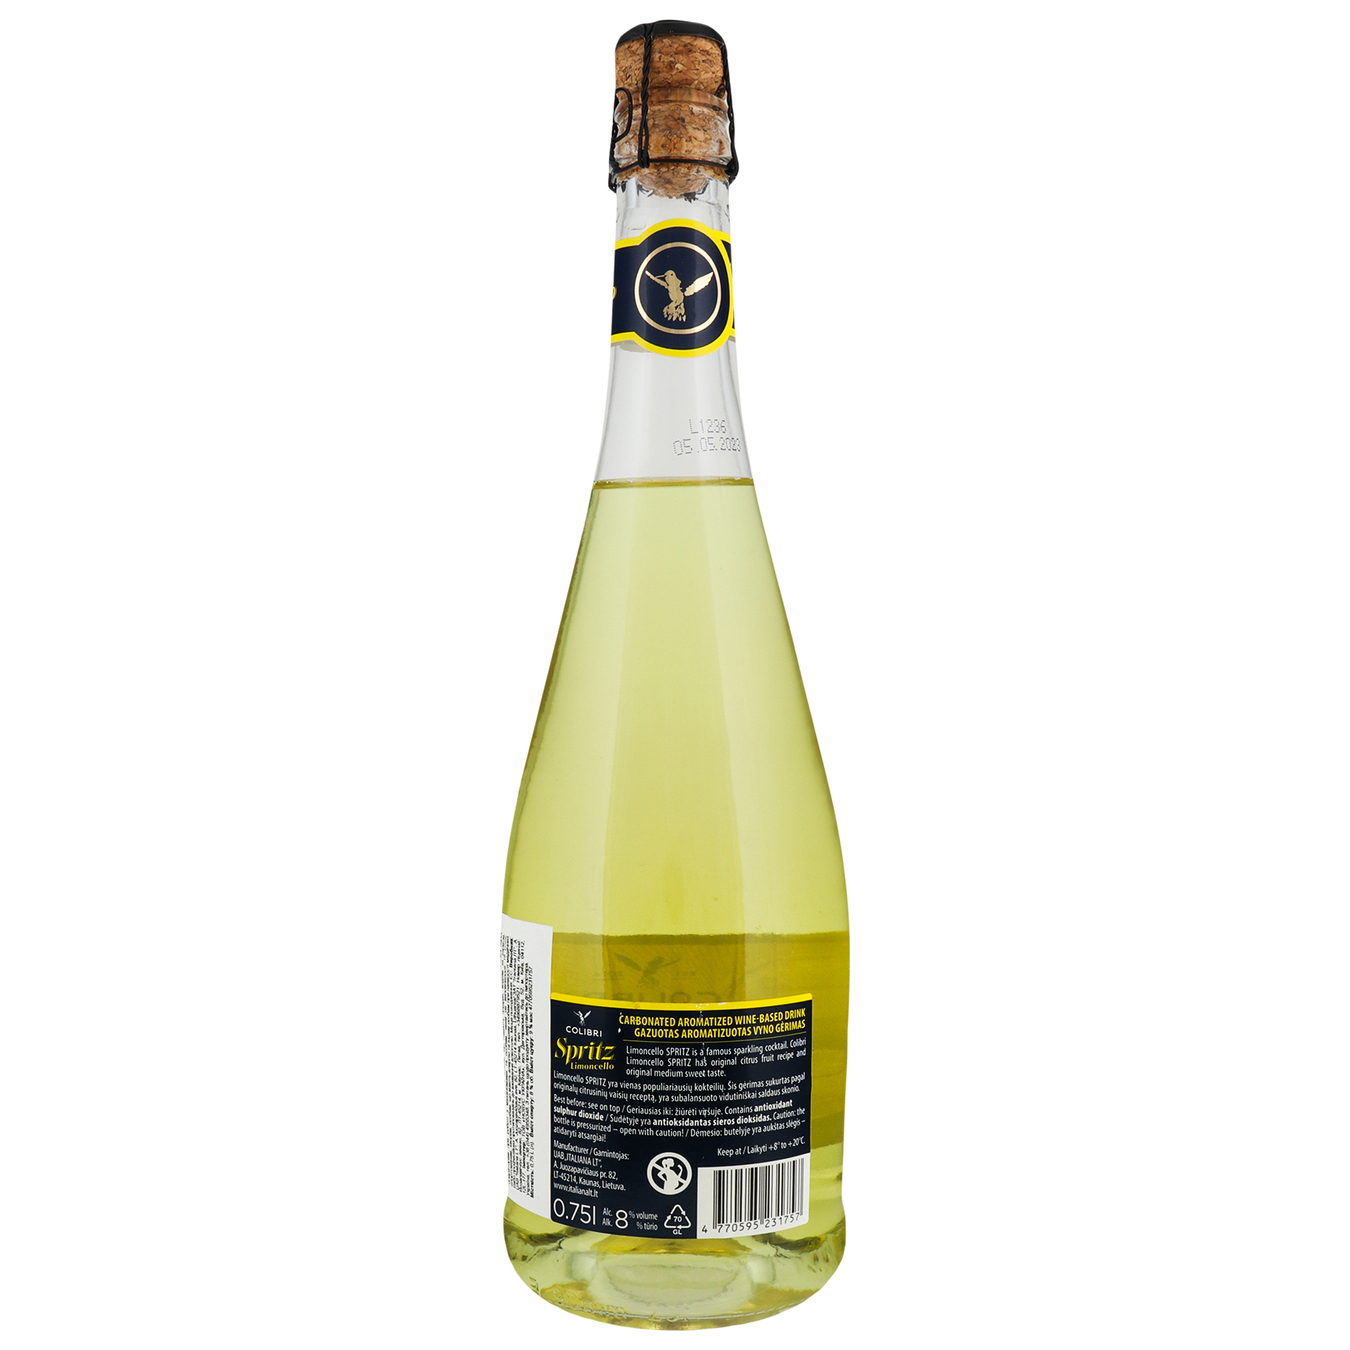 Sparkling Wine Drink Colibri Limoncello Spritz 8% 0,75l 2